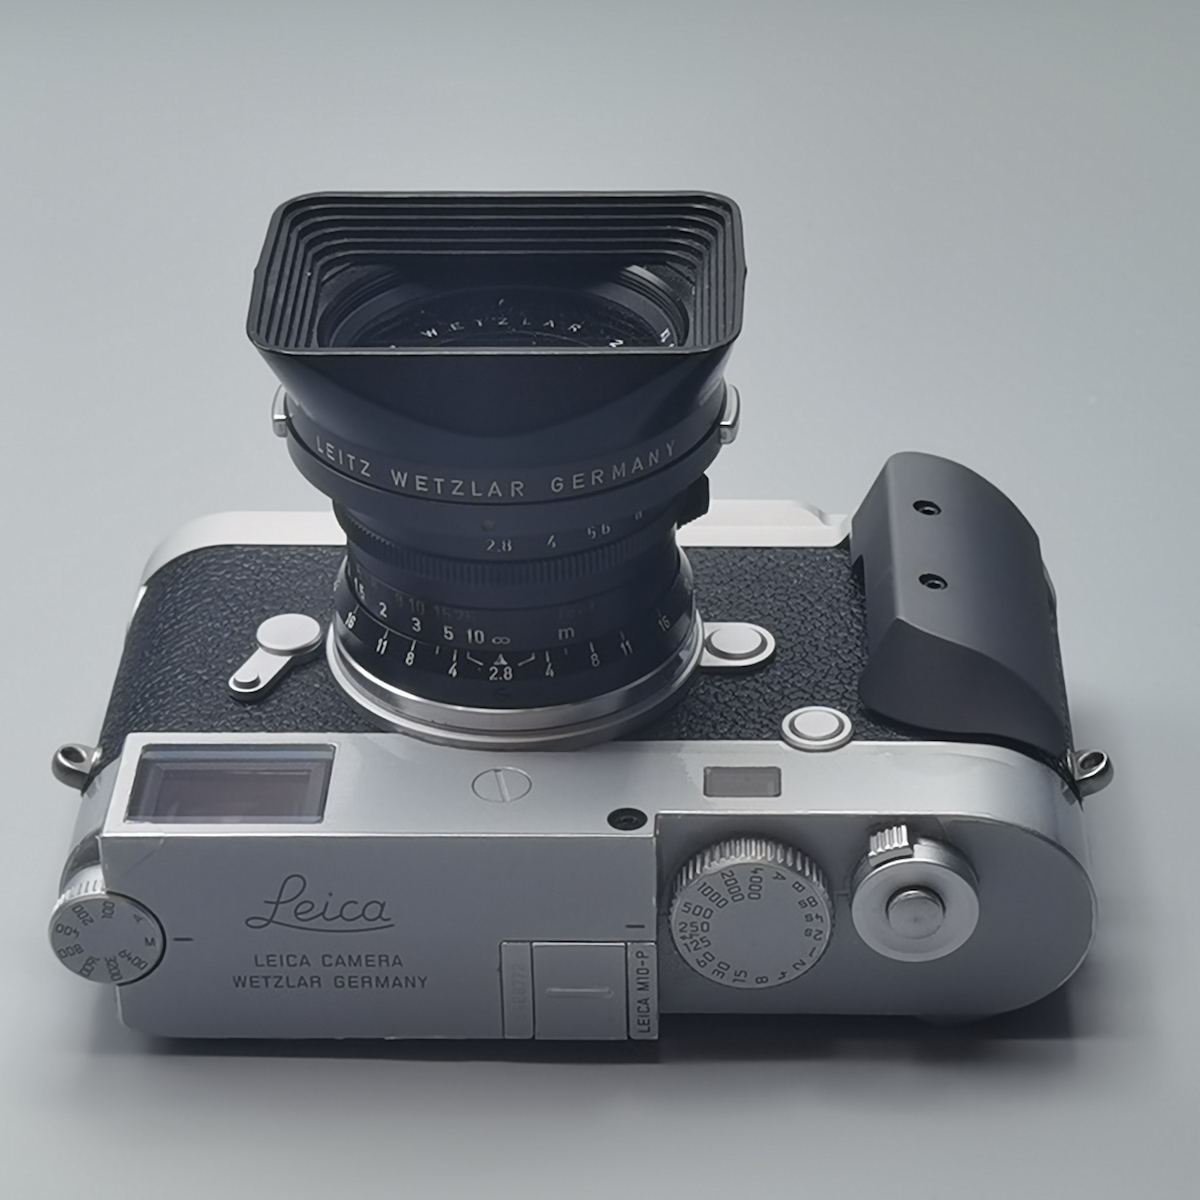 IDS modular grip for Leica M9 / M8 – IDS initial design studio